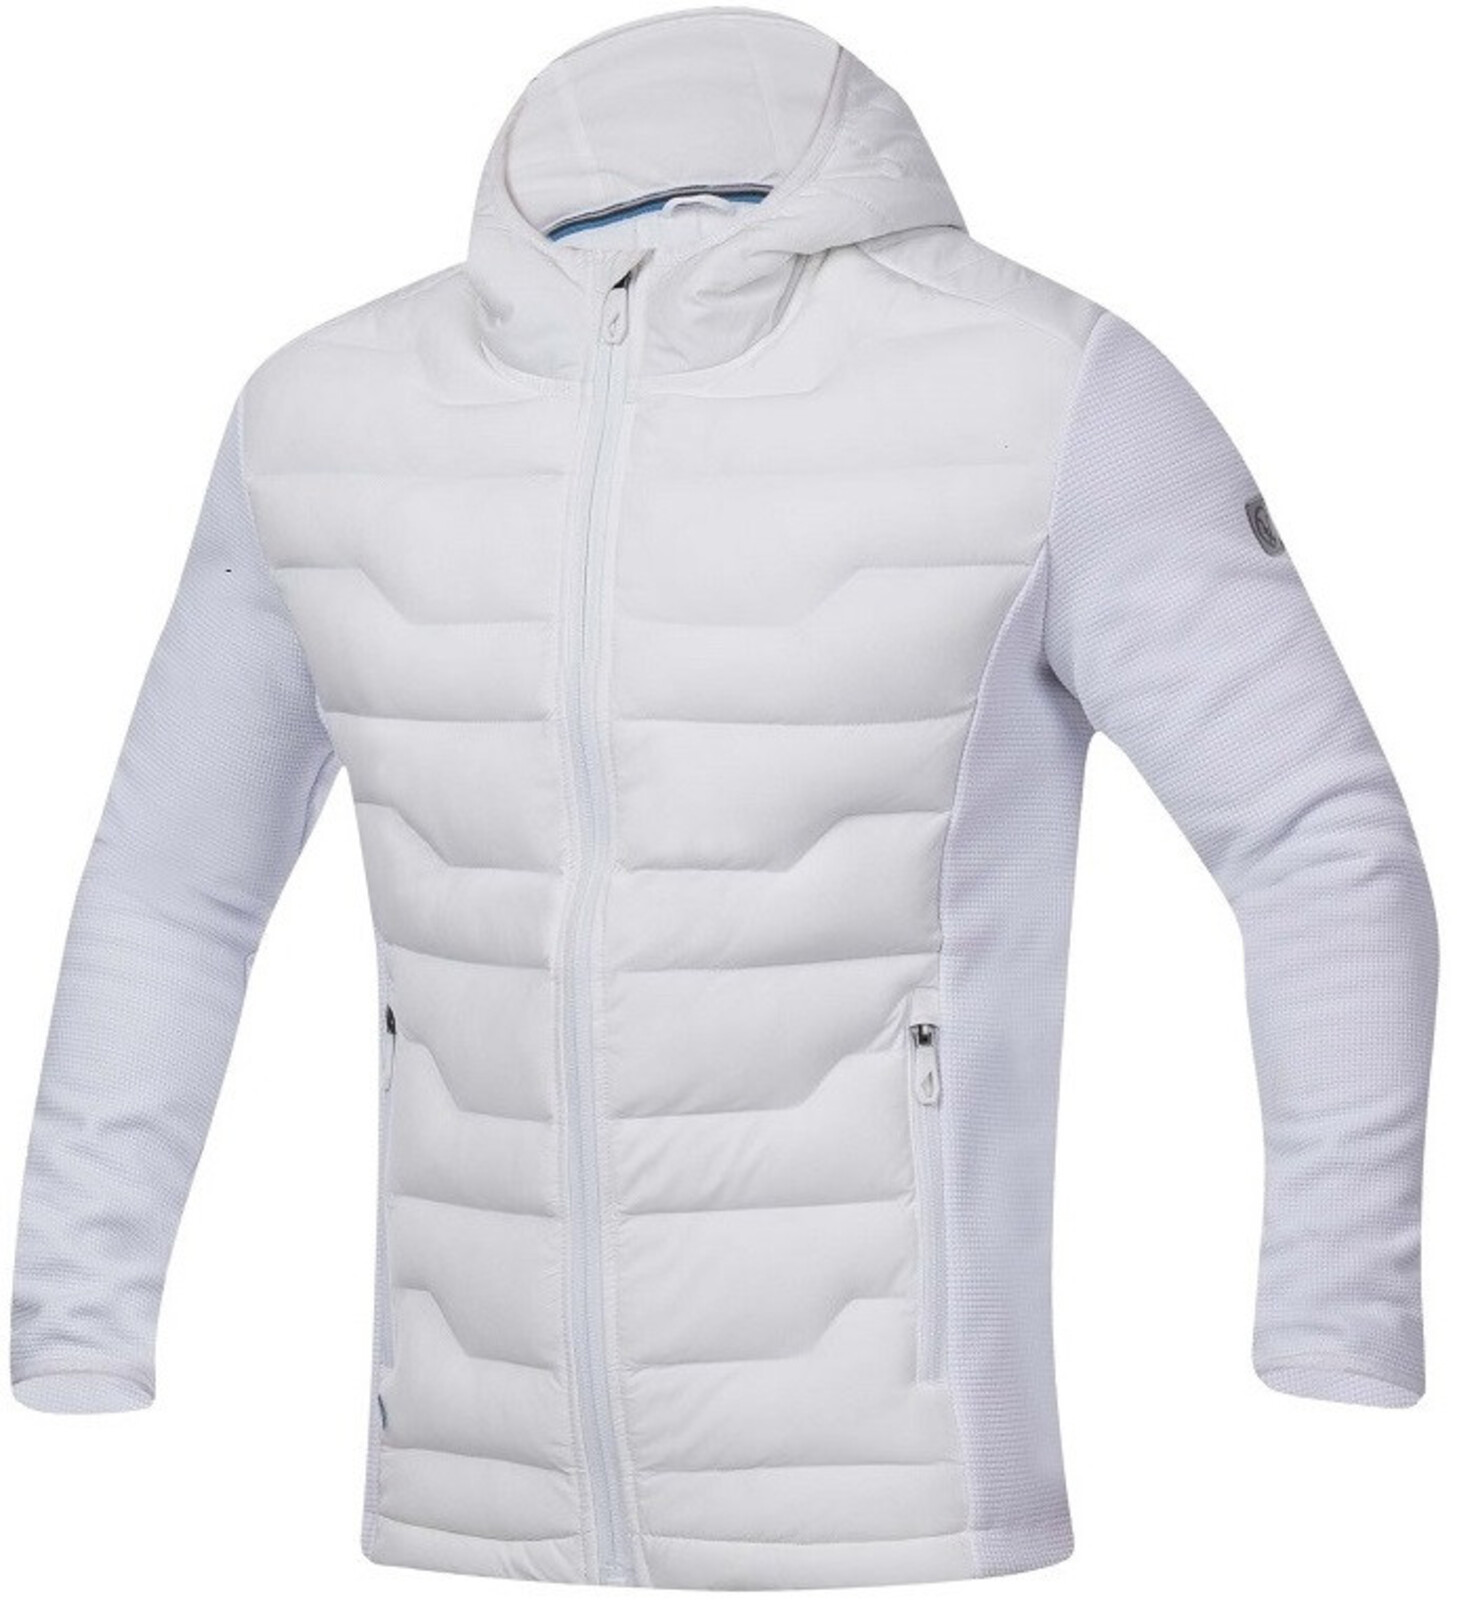 Pánska úpletová bunda Ardon Nypaxx - veľkosť: M, farba: biela